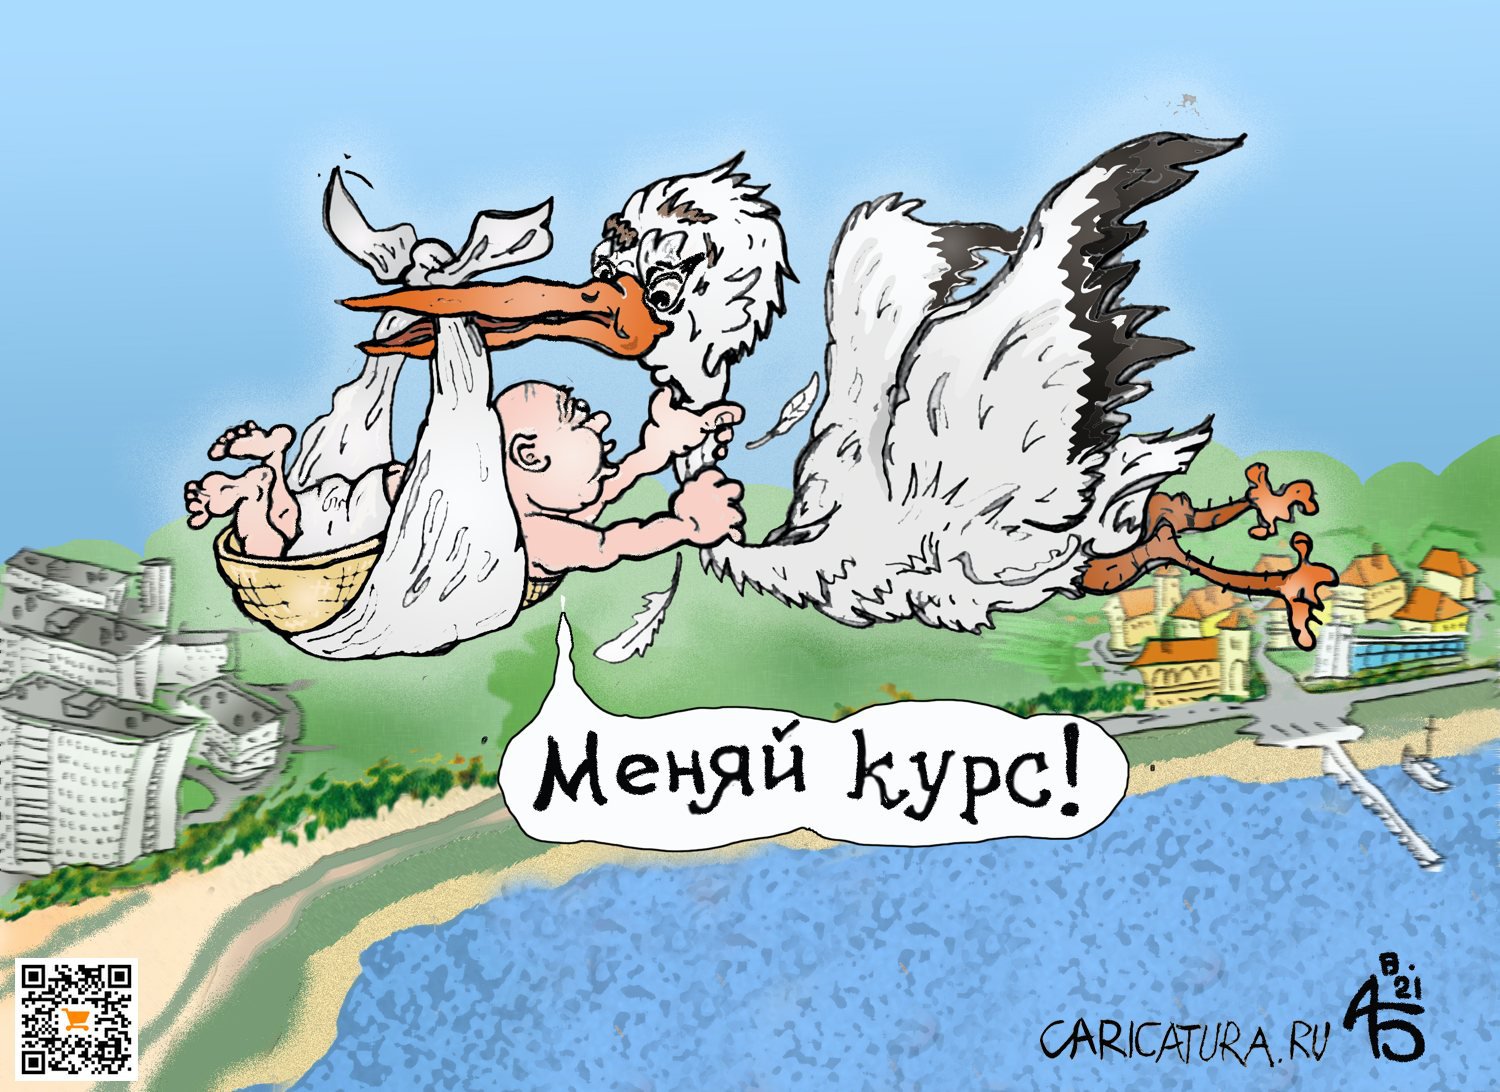 Карикатура "Воздушный террорист", Александр Богданов